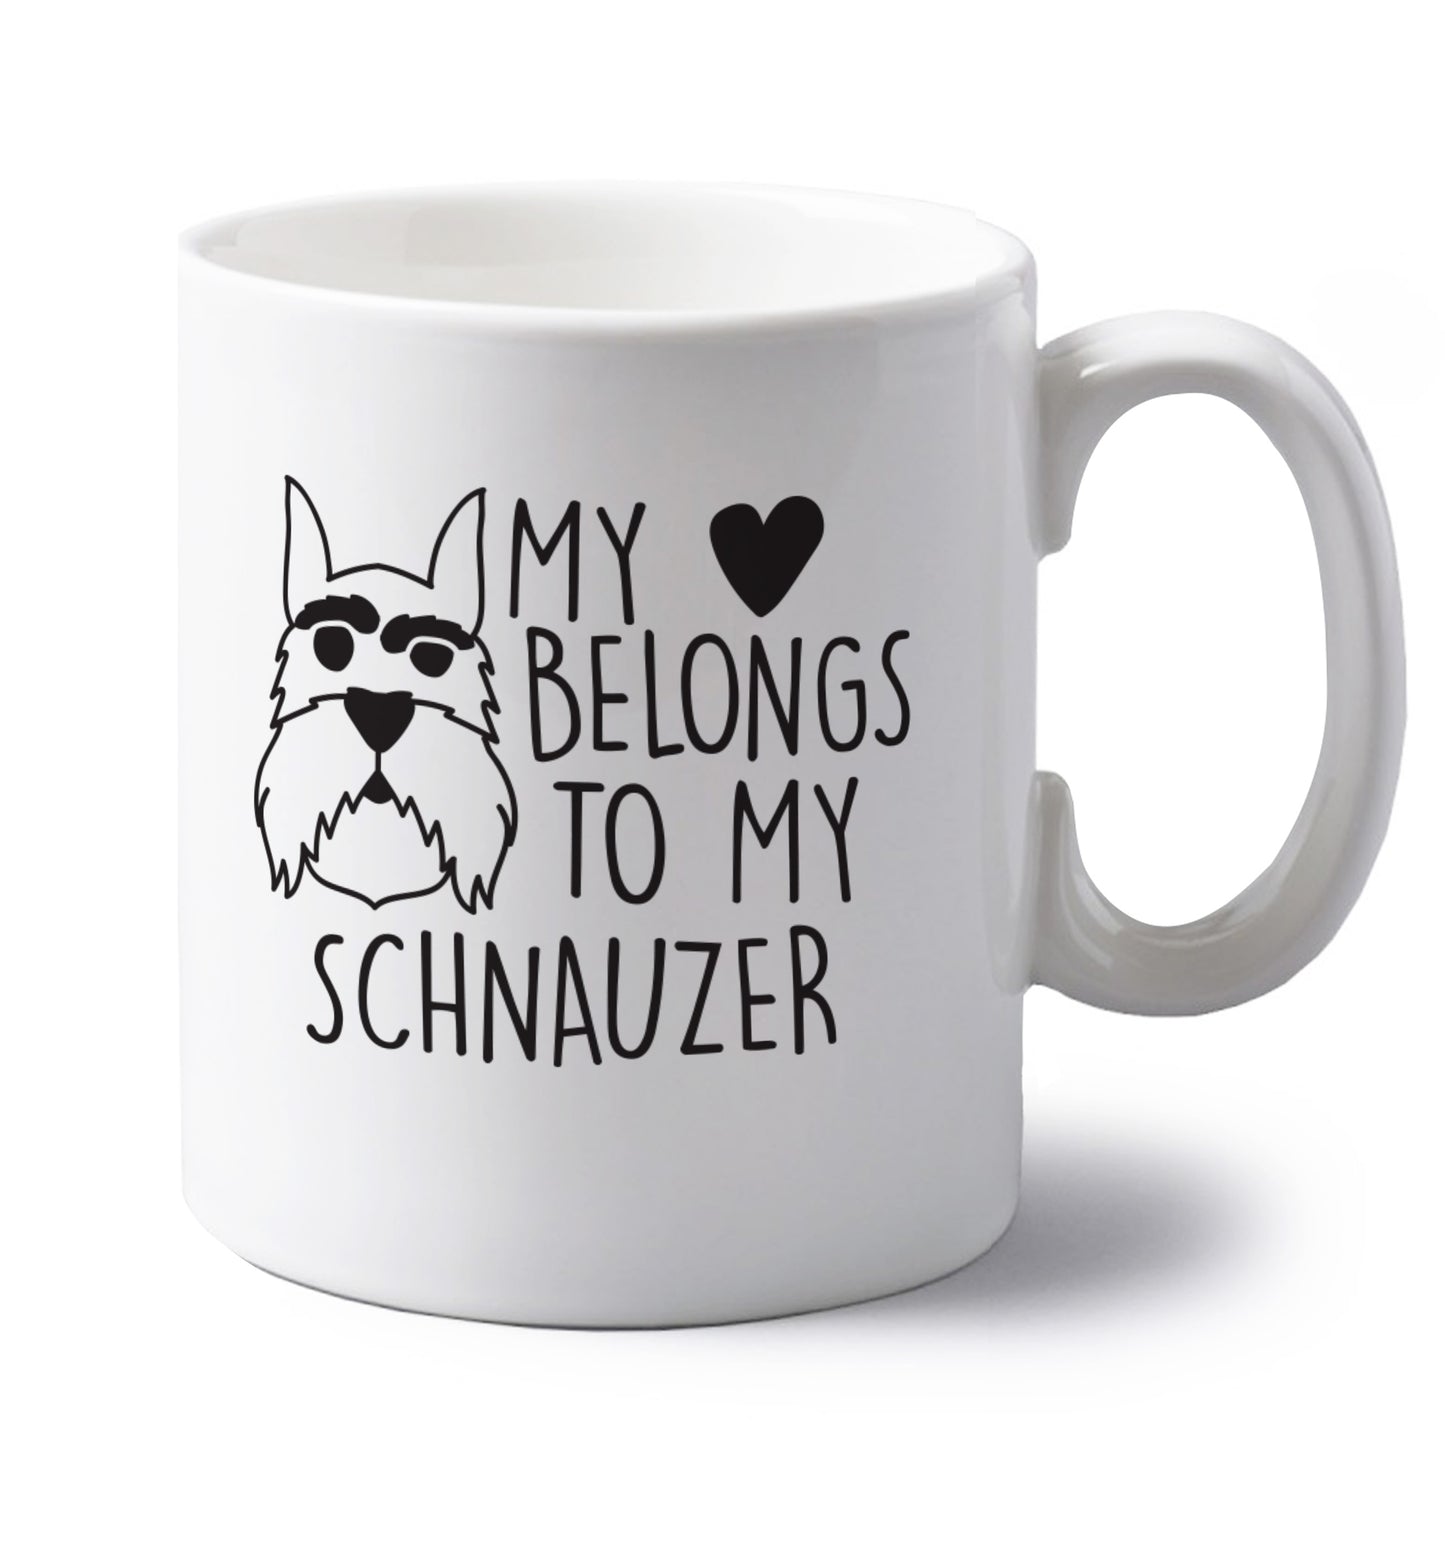 My heart belongs to my schnauzer left handed white ceramic mug 